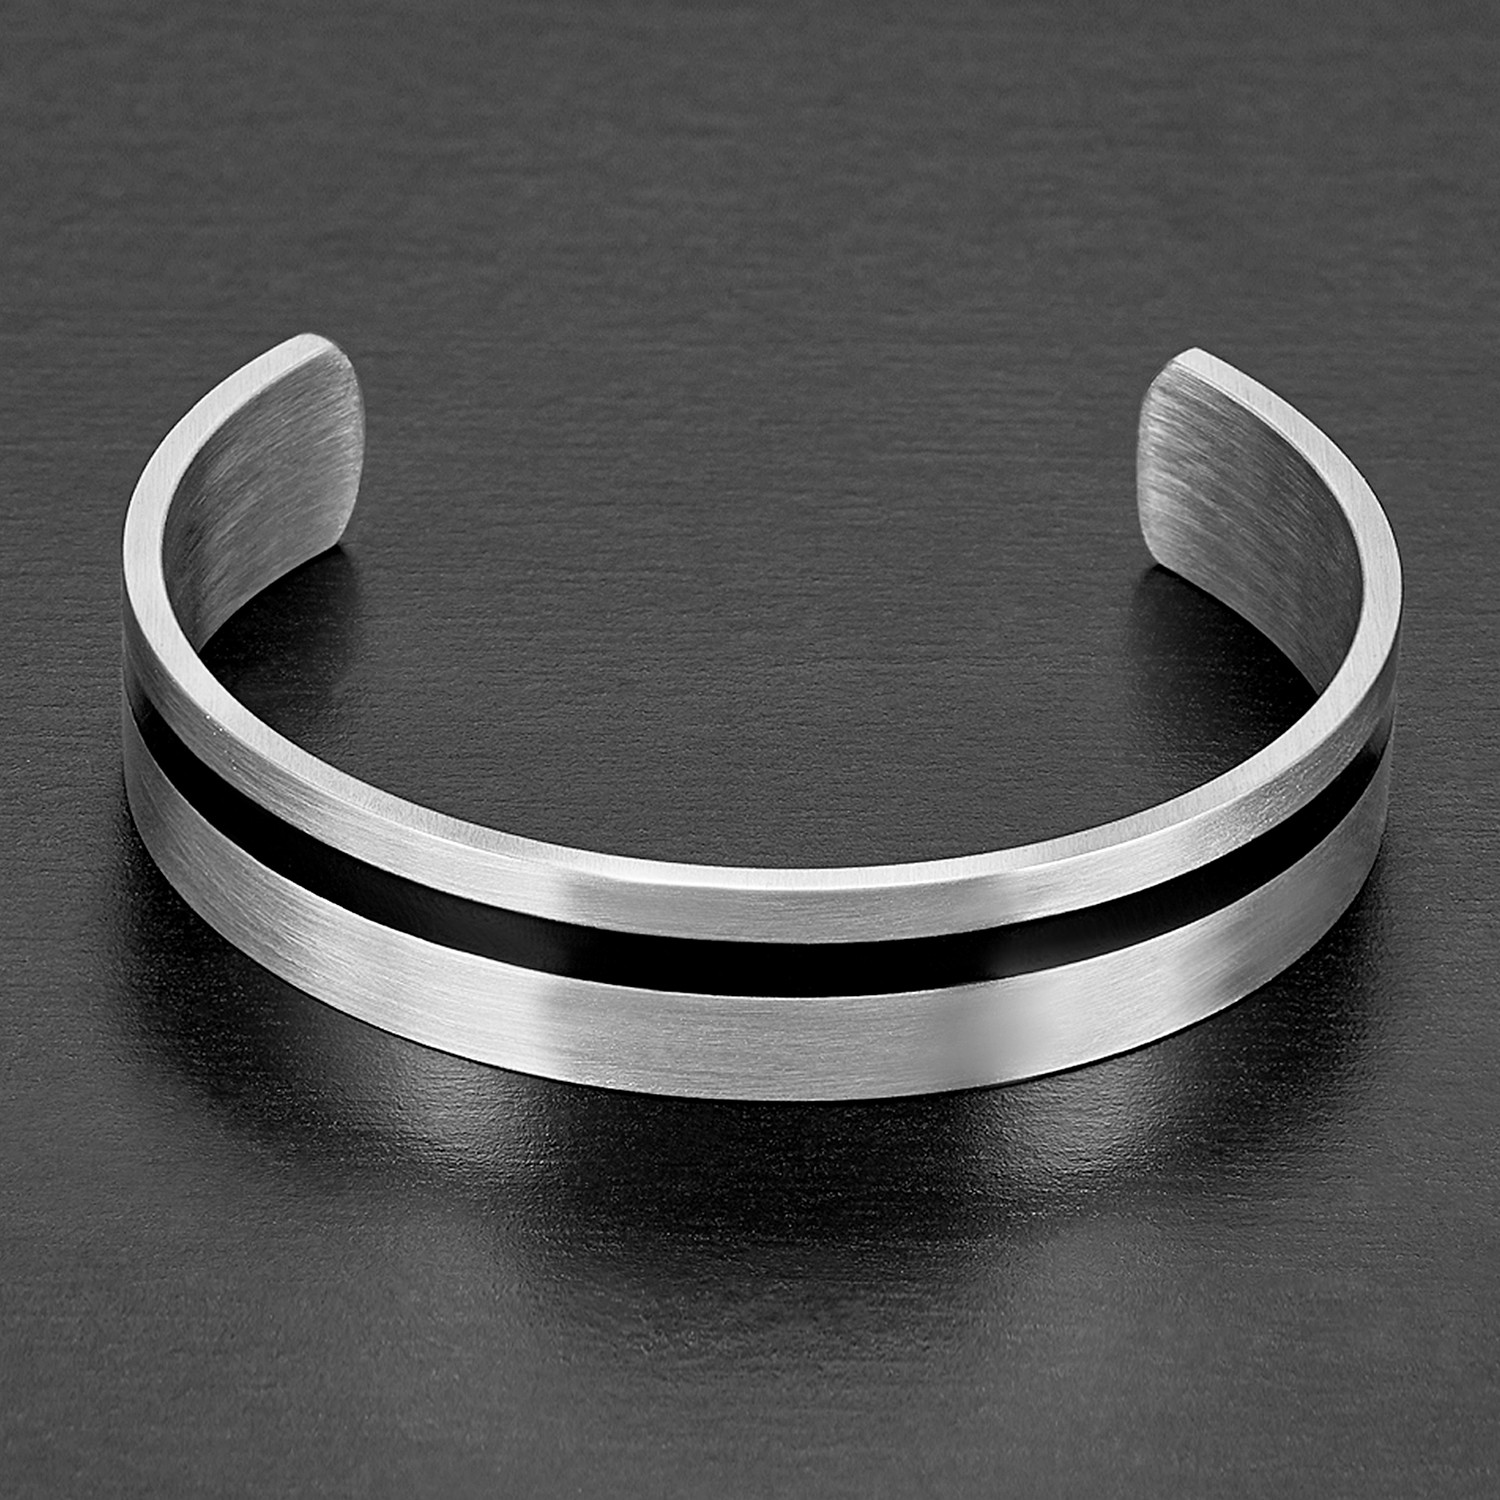 Stainless Steel Black Stripe Cuff Bracelet // Black + Silver - West ...